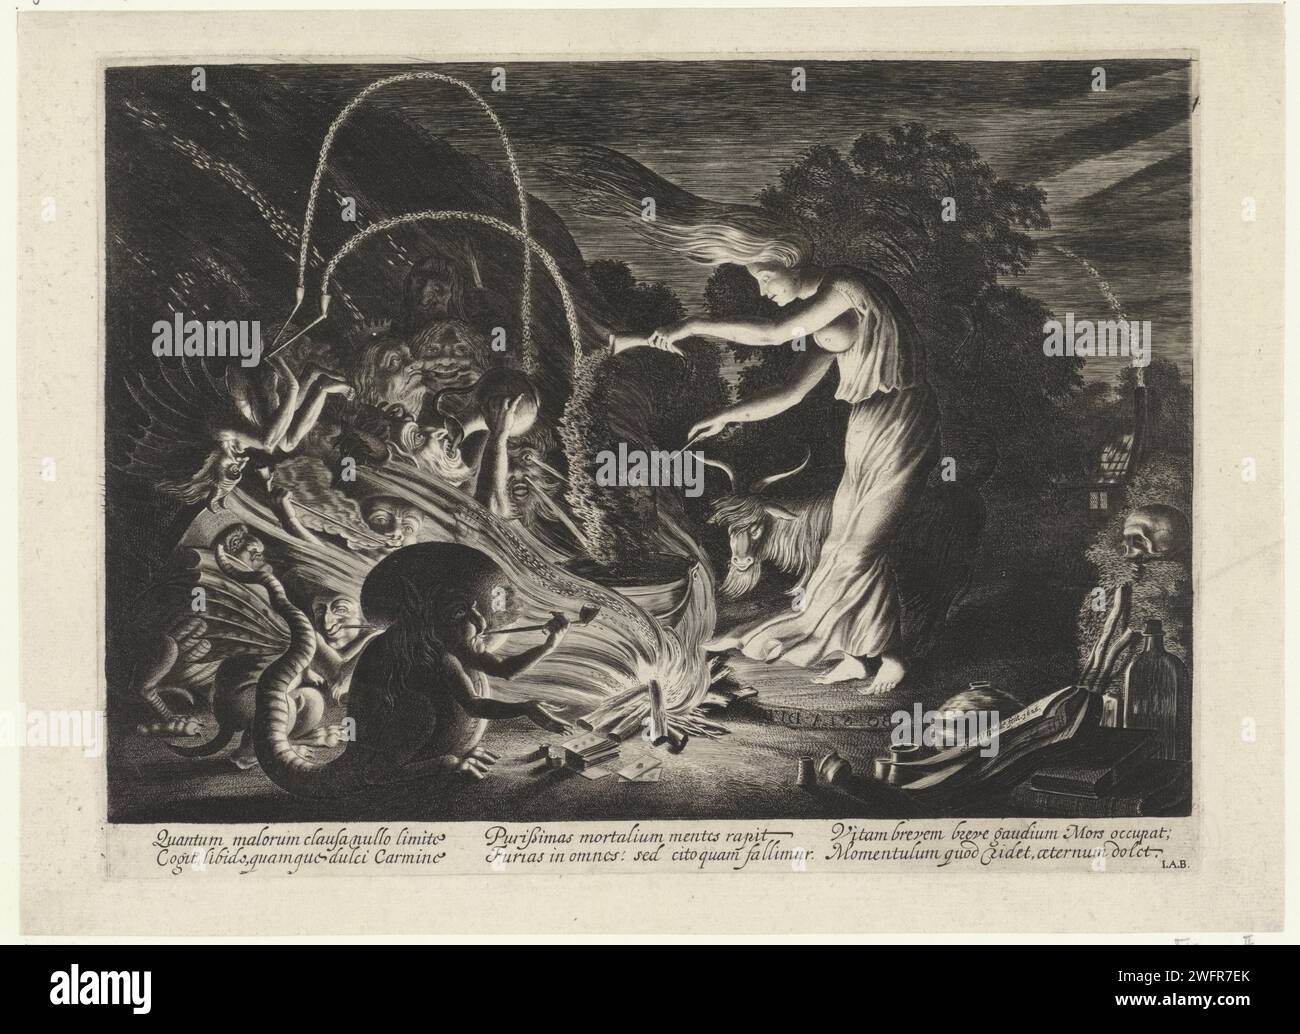 Hexe, Jan van de Velde (II), 1626 druckt Eine Hexe in einen Topf, wo sie Pulver gießen. Ein starker Wind weht. Eine Gruppe Monster für sie. Amsterdamer Papierstich Hexe, Zauberin. Hexe, Zauberer mit dem Teufel und/oder Dämonen. Hexen, die die Elemente kontrollieren, z. B. einen Sturm aufwerfen Stockfoto